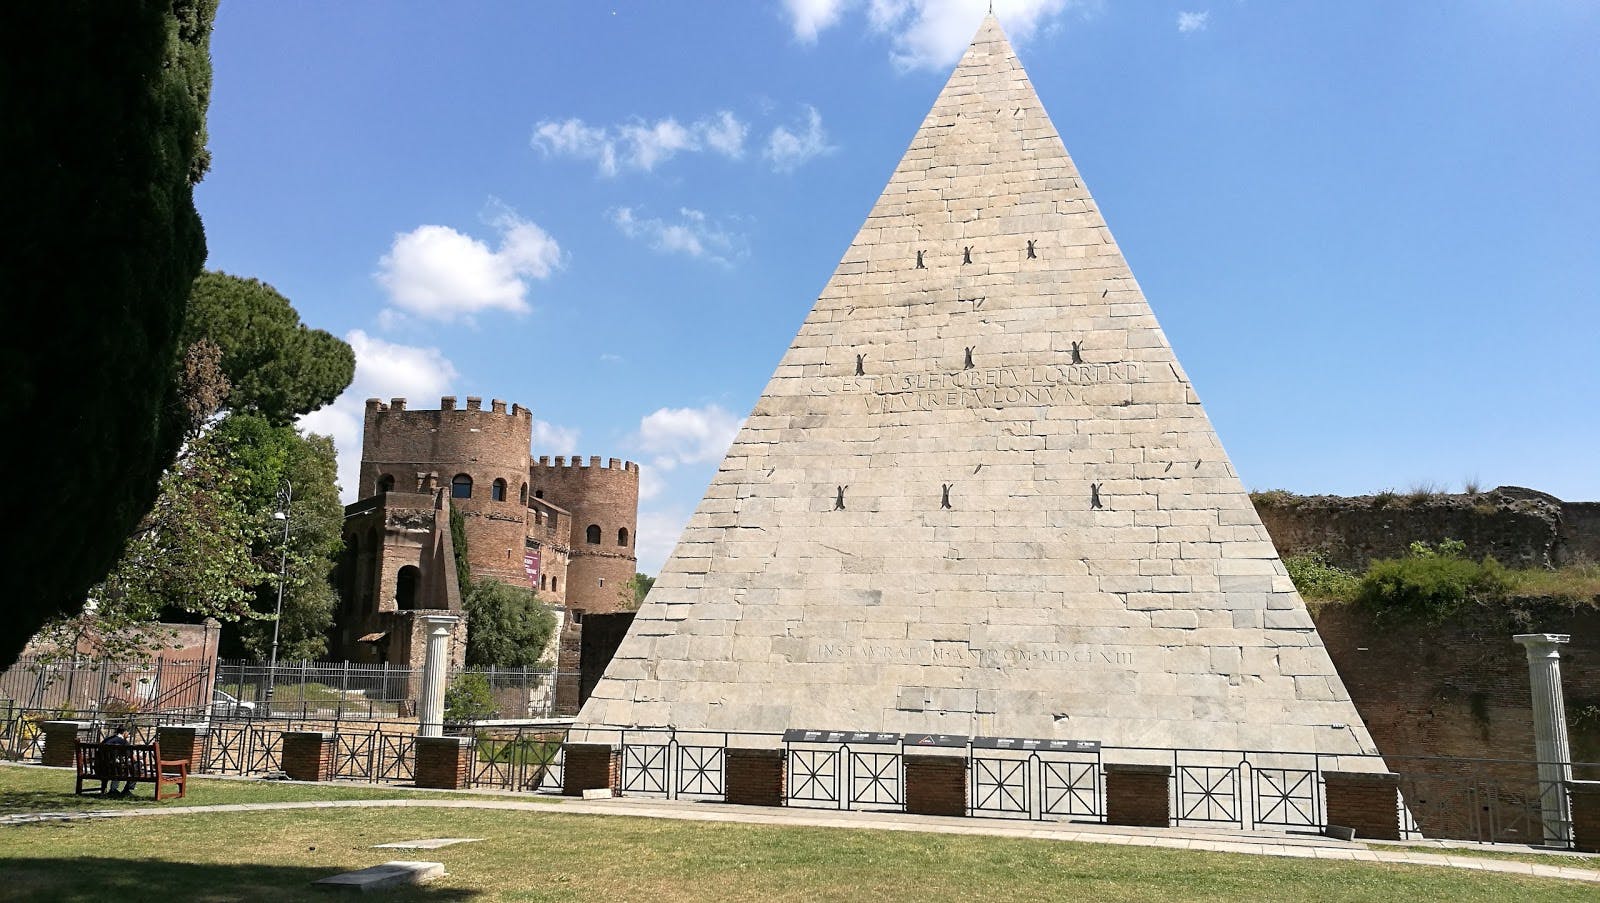 Image - Pyramid of Caius Cestius